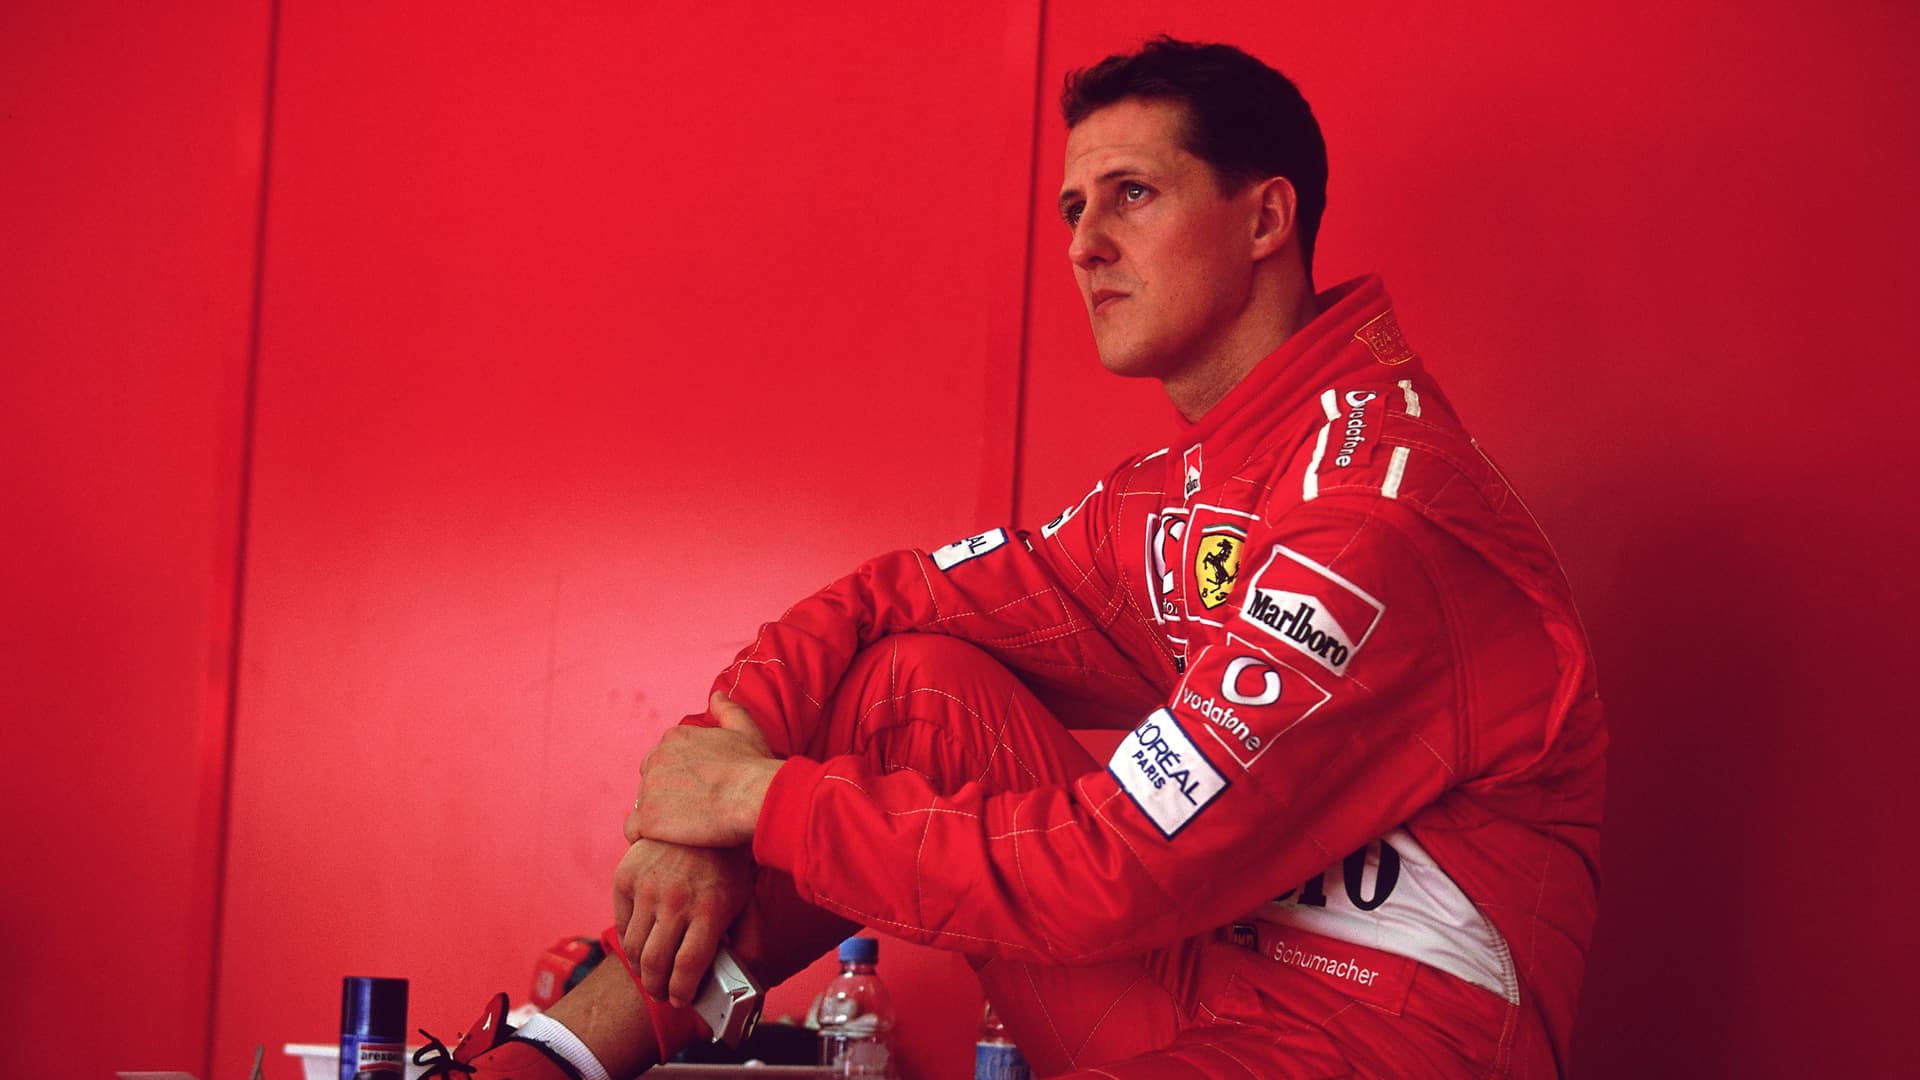 Schumacher: documentário sobre piloto ganha trailer e data de estreia